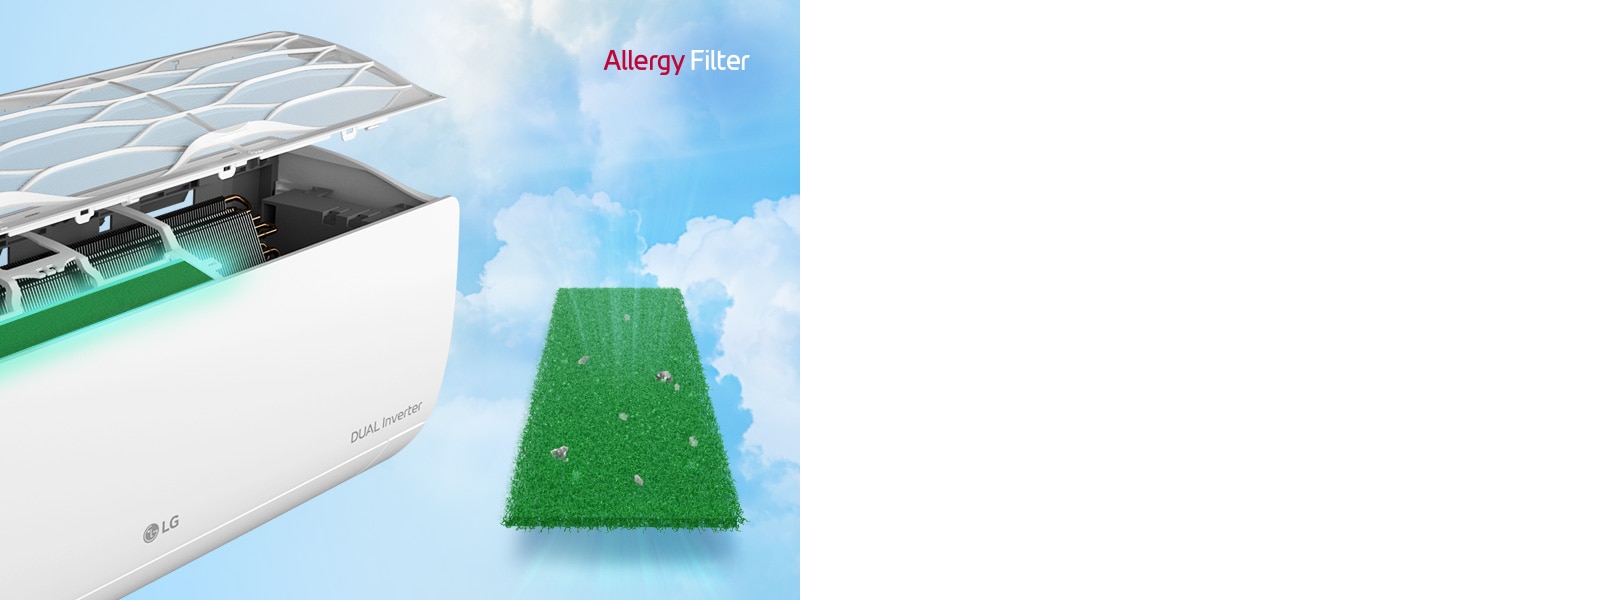 Bočni kut klima-uređaja prikazan je s filterima koji plutaju iznad kako bi se prikazao filtar za alergije instaliran unutra. Pokraj uređaja je cijeli zeleni filtar za alergije s grinjama koje su uhvaćene u njemu. Logo filtra za alergije nalazi se u gornjem desnom kutu.